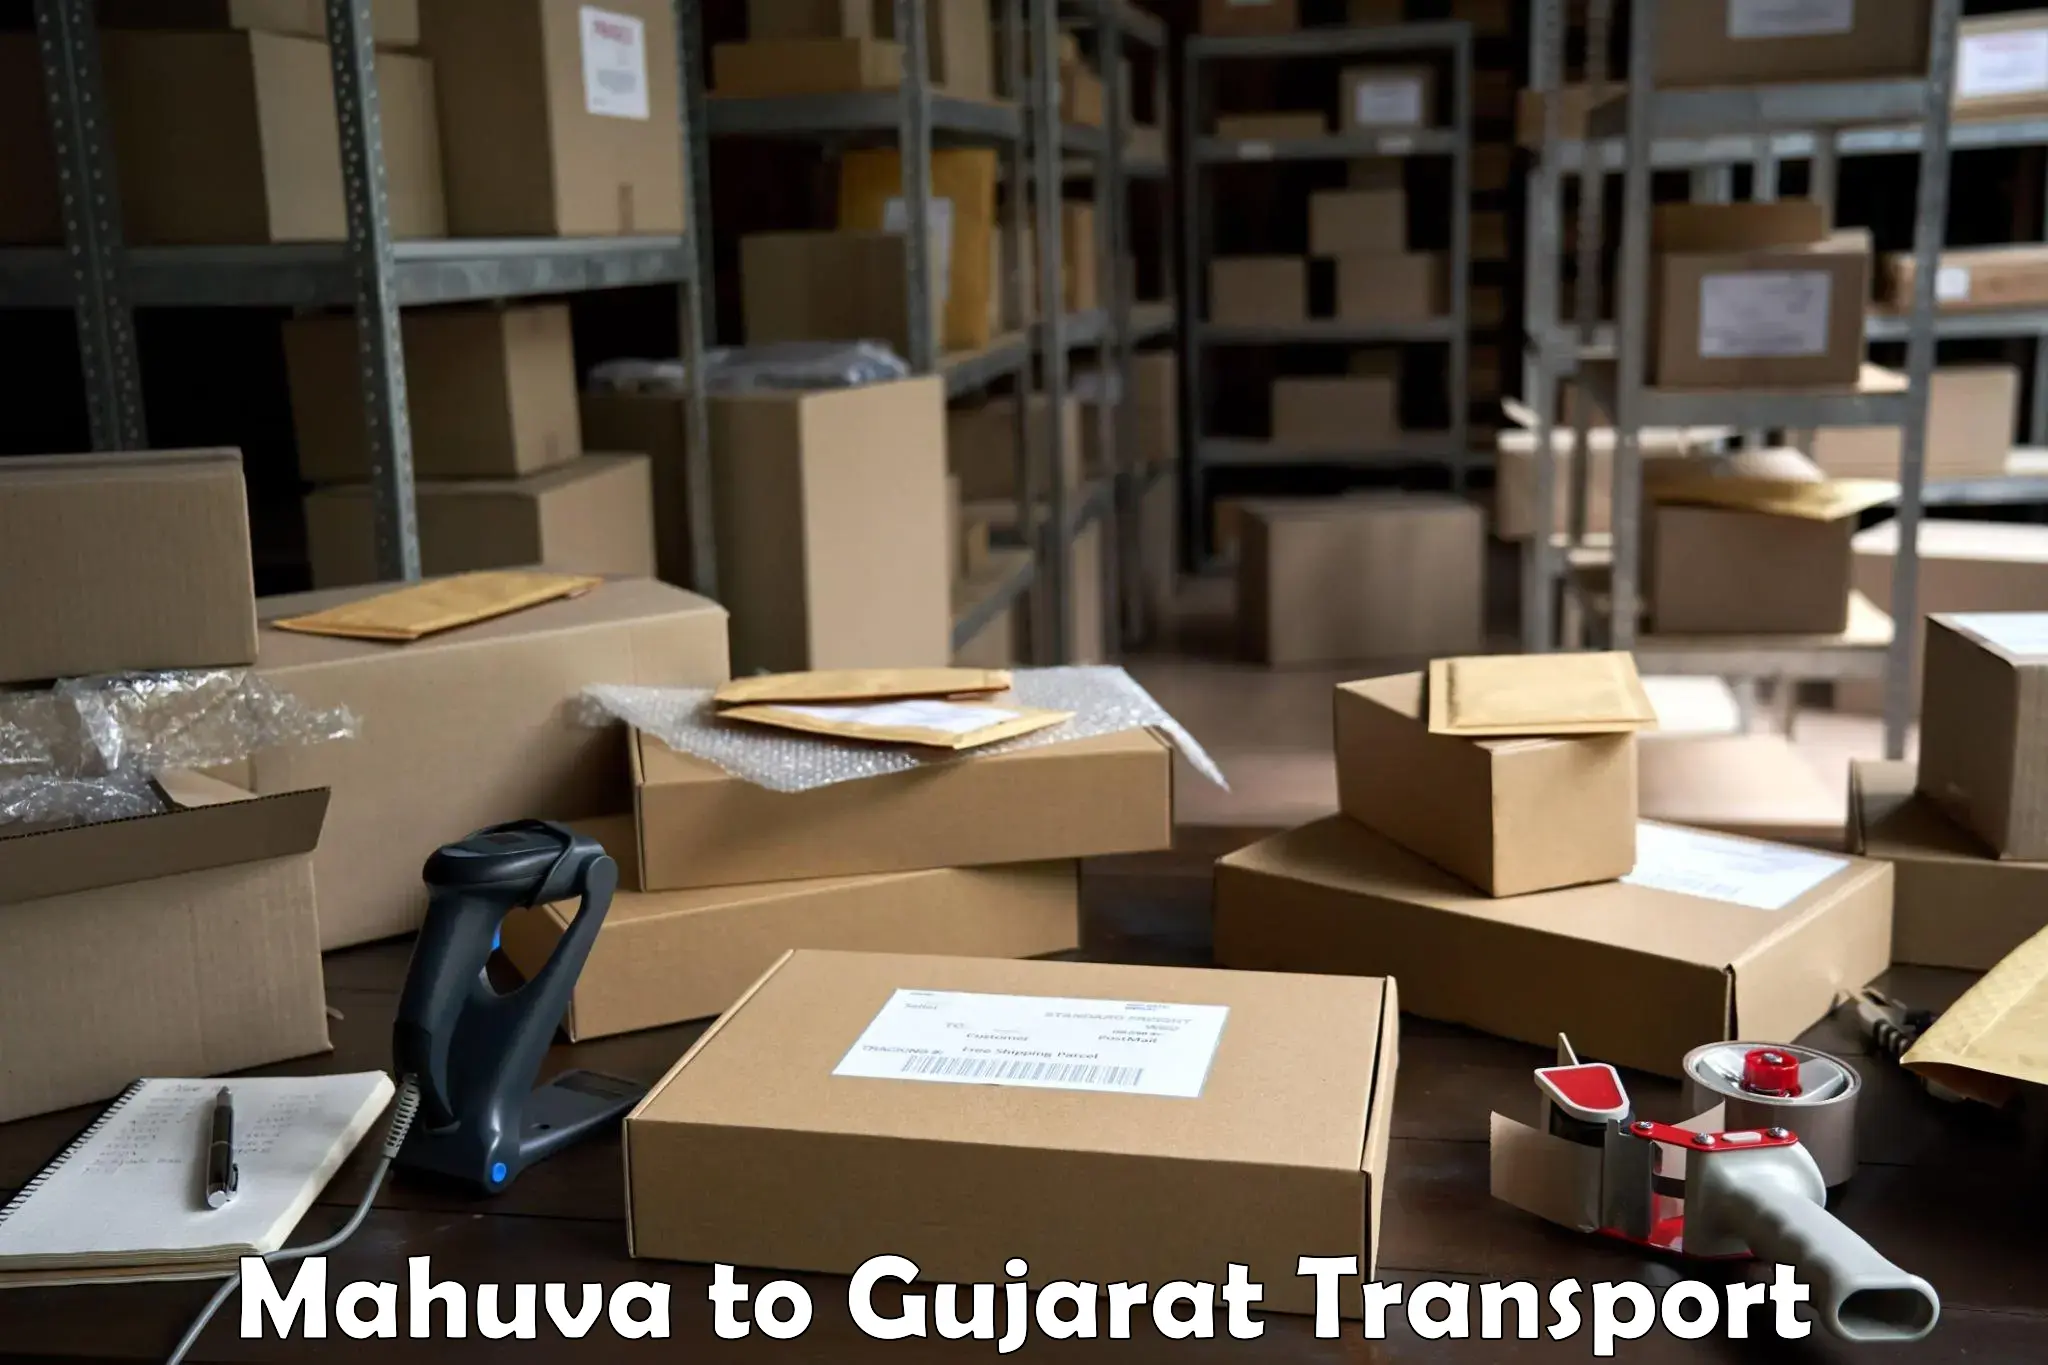 Nearby transport service Mahuva to Gujarat